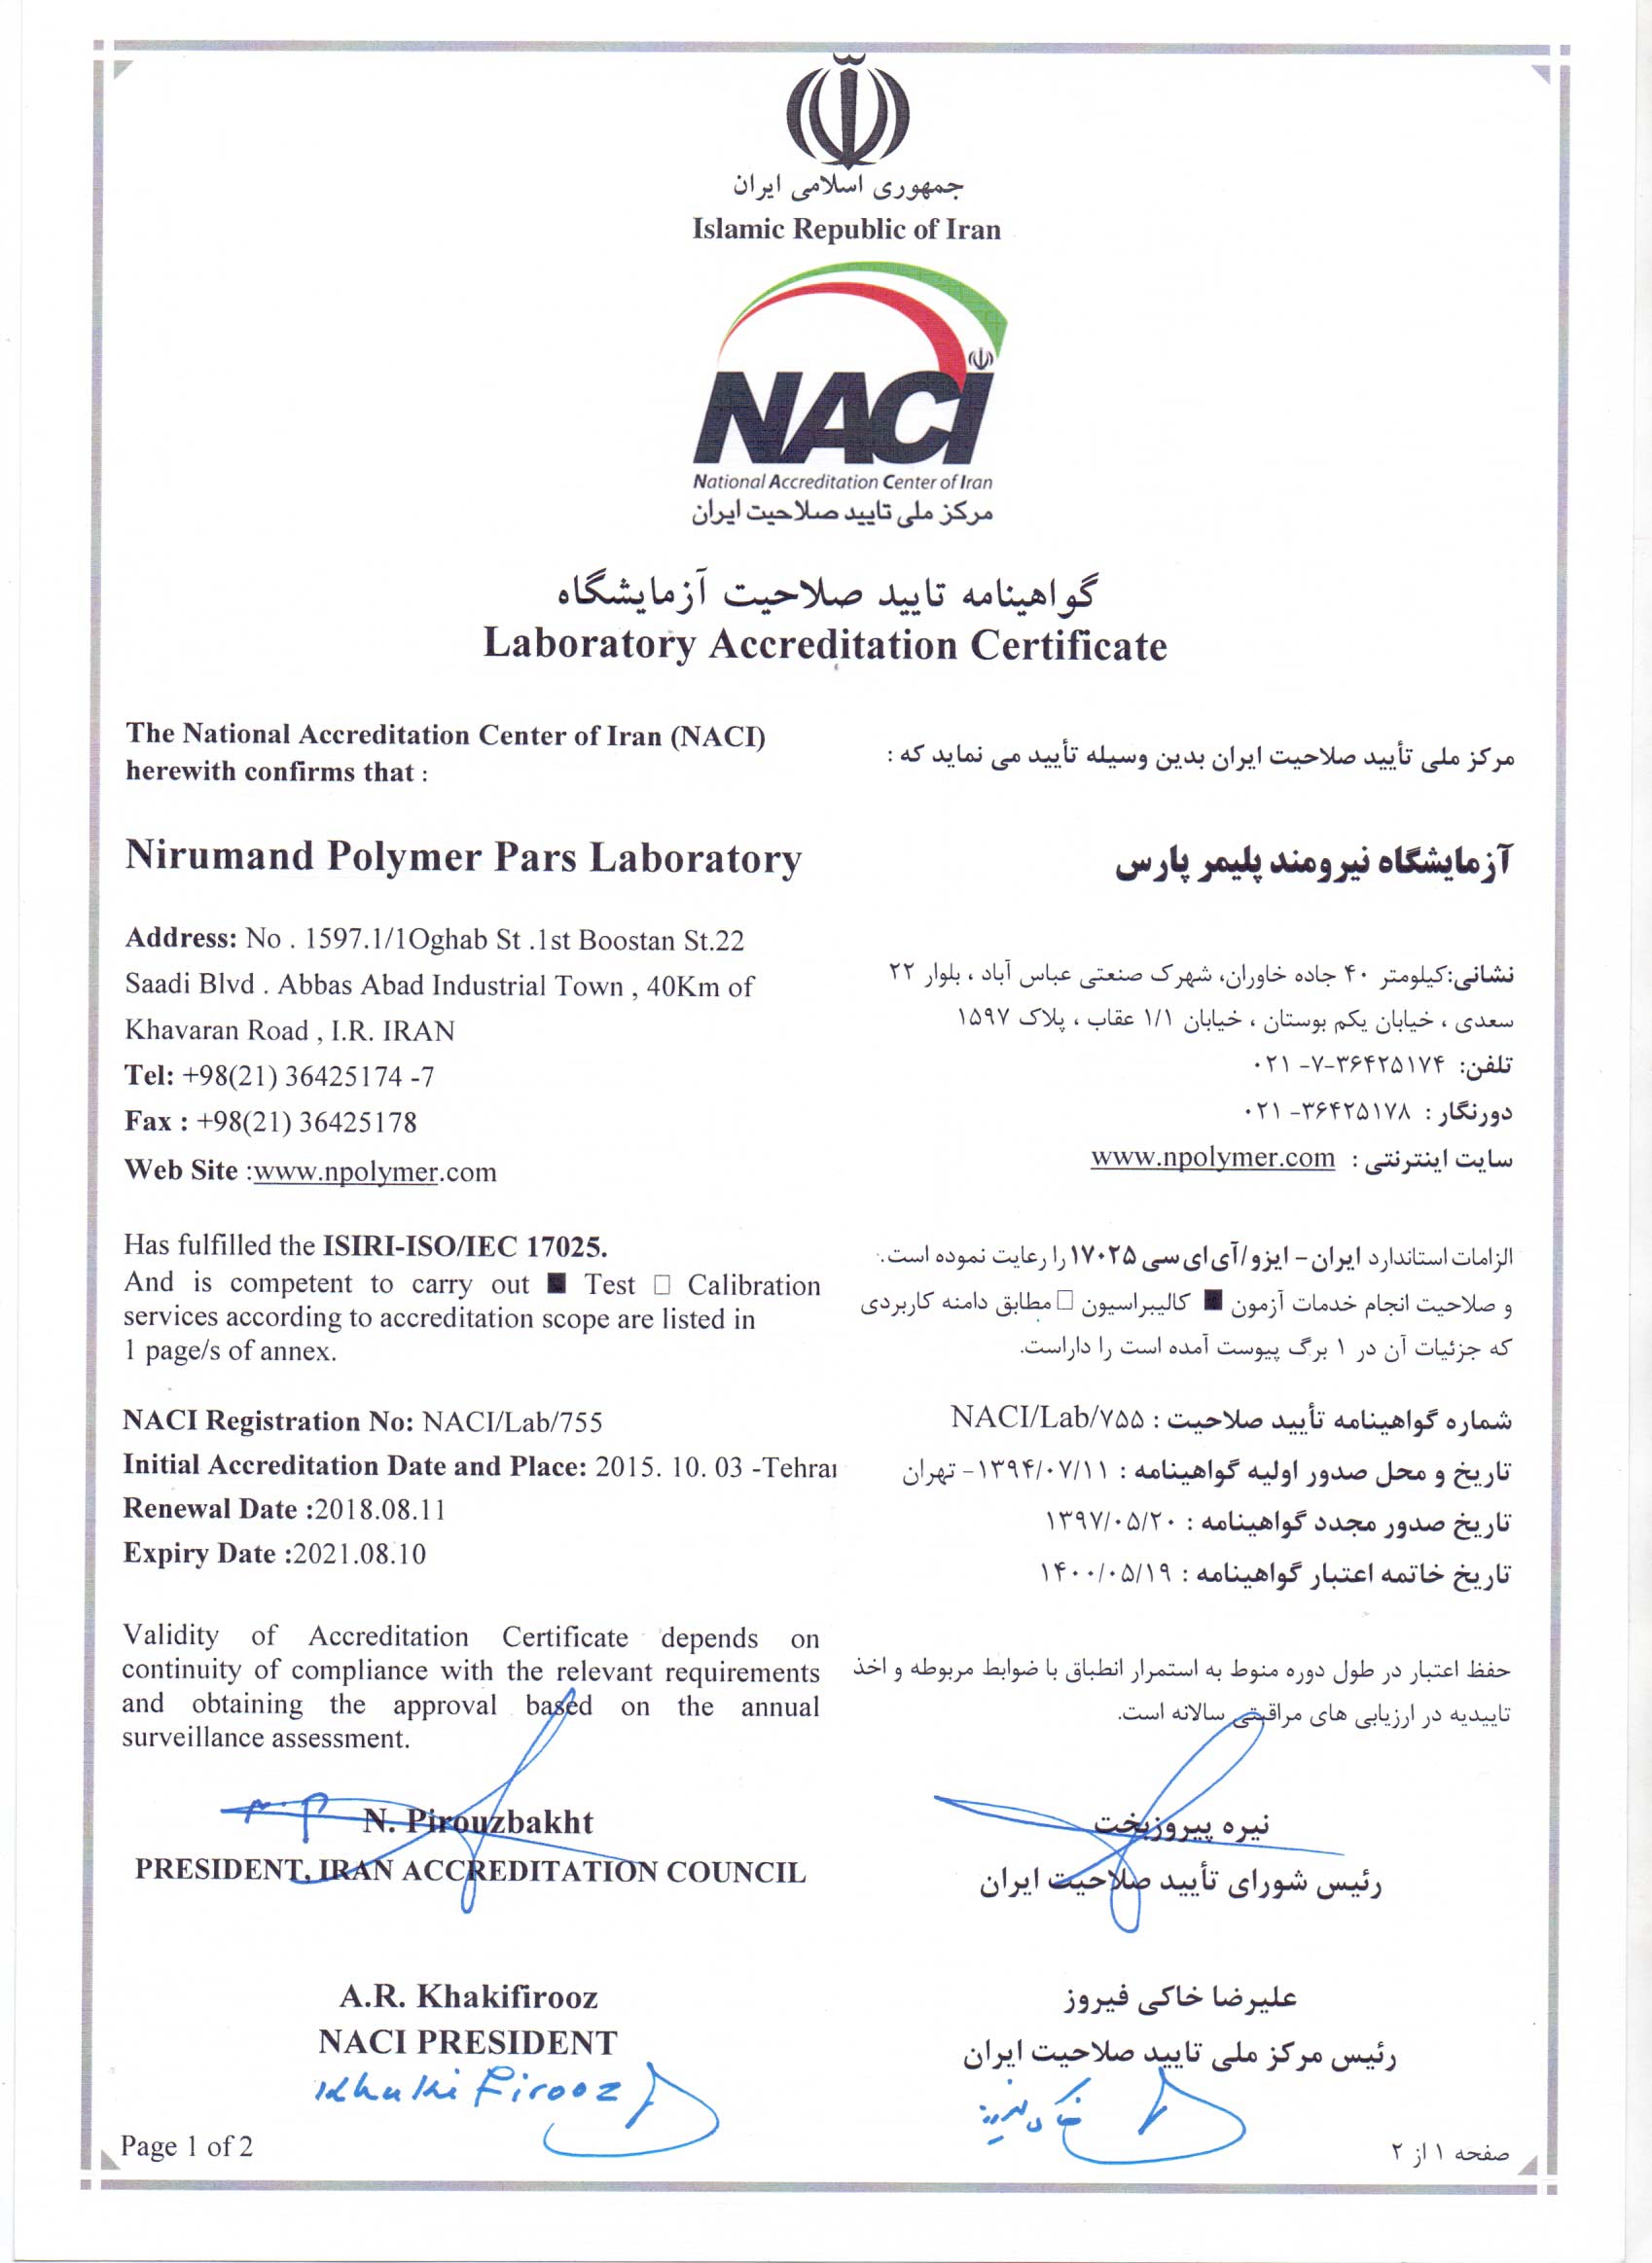 دریافت گواهینامه تایید صلاحیت آزمایشگاه توسط شرکت نیرومند پلیمر پارس